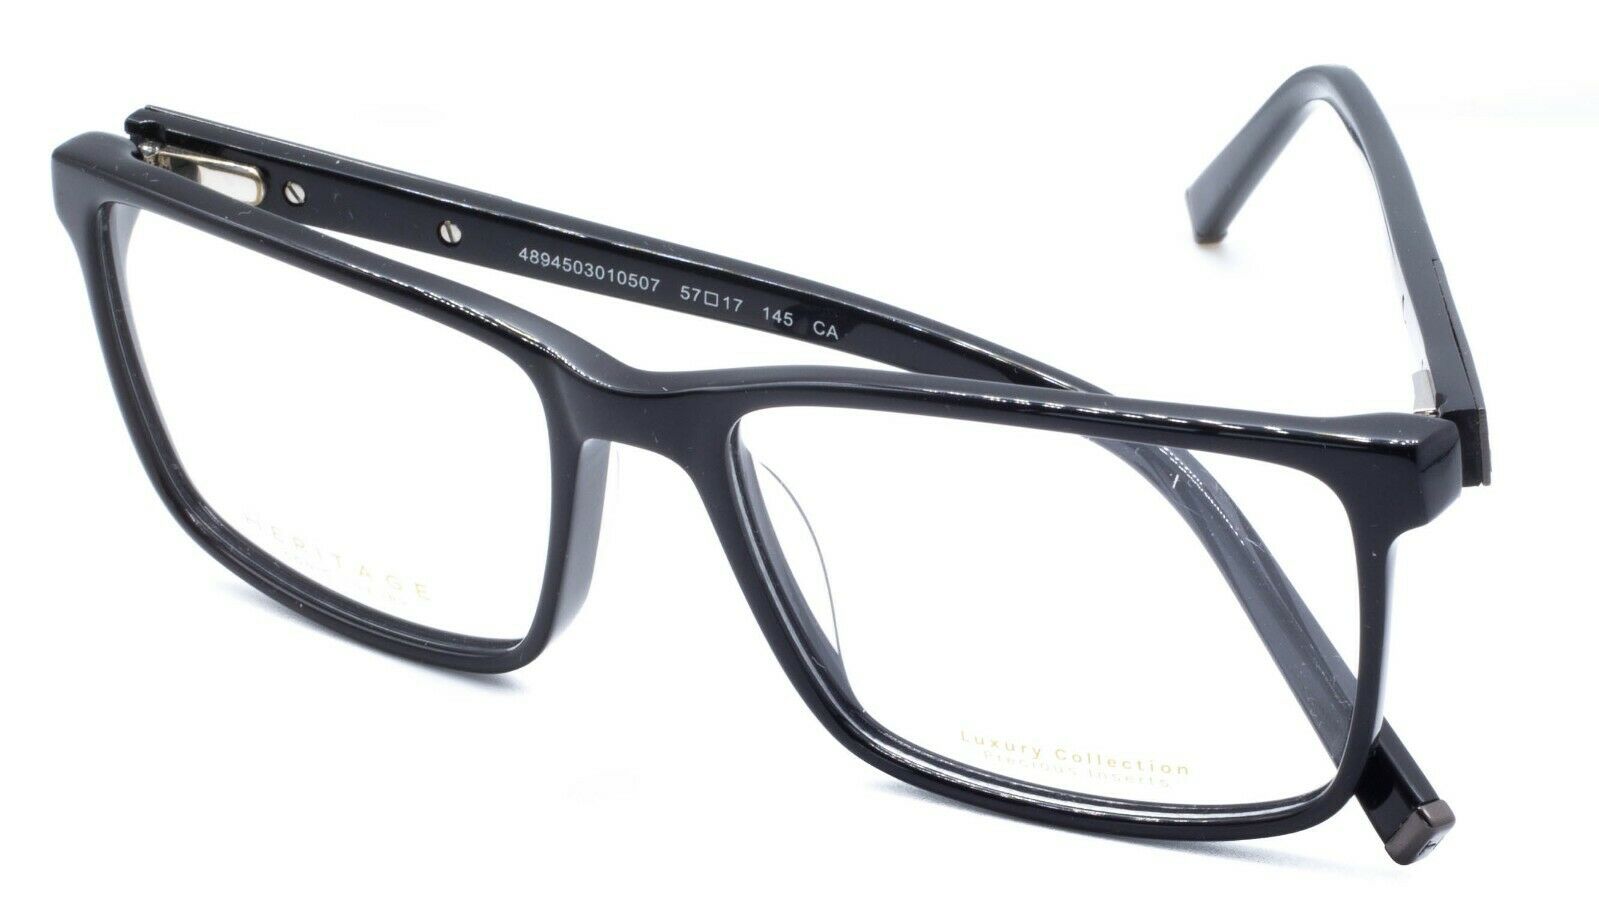 HERITAGE Iconic Luxury HEBM14 BG Eyewear FRAMES Eyeglasses RX Optical Glasses